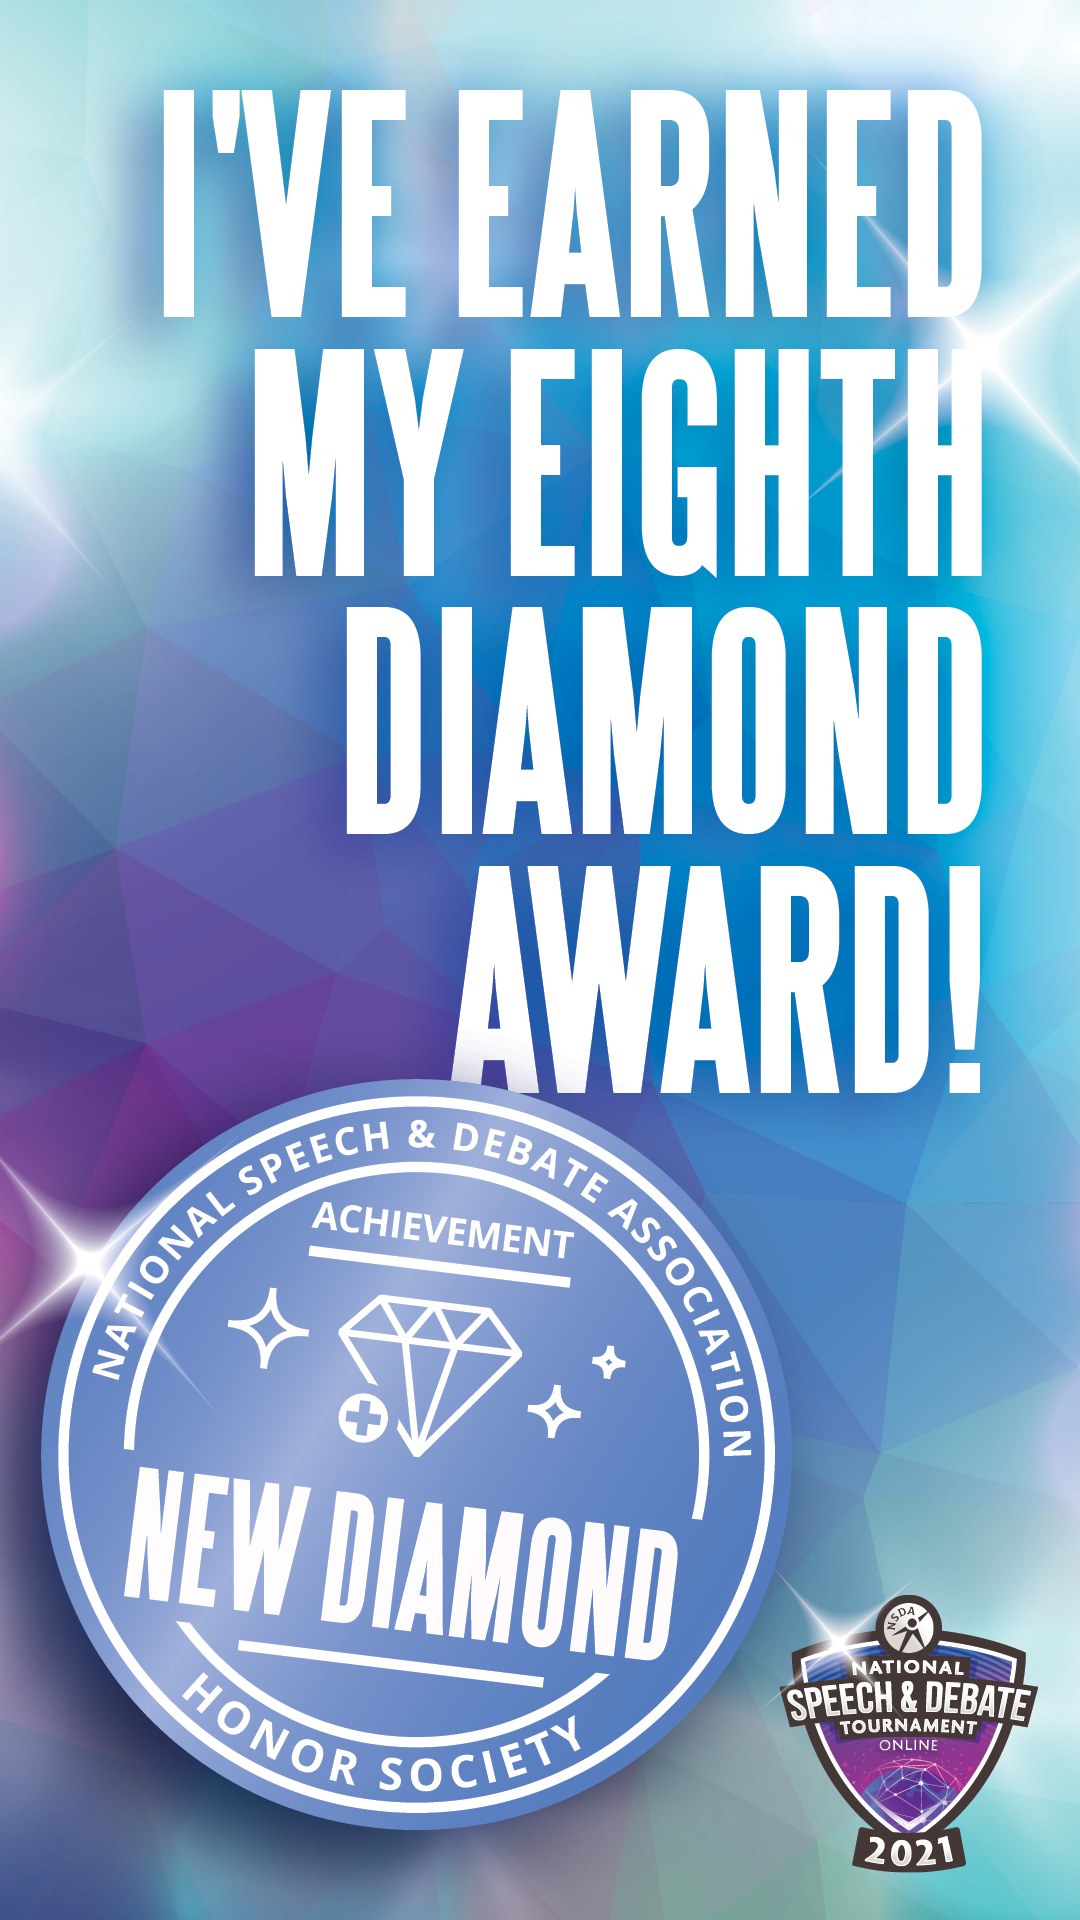 I've Earned My Eighth Diamond Award!